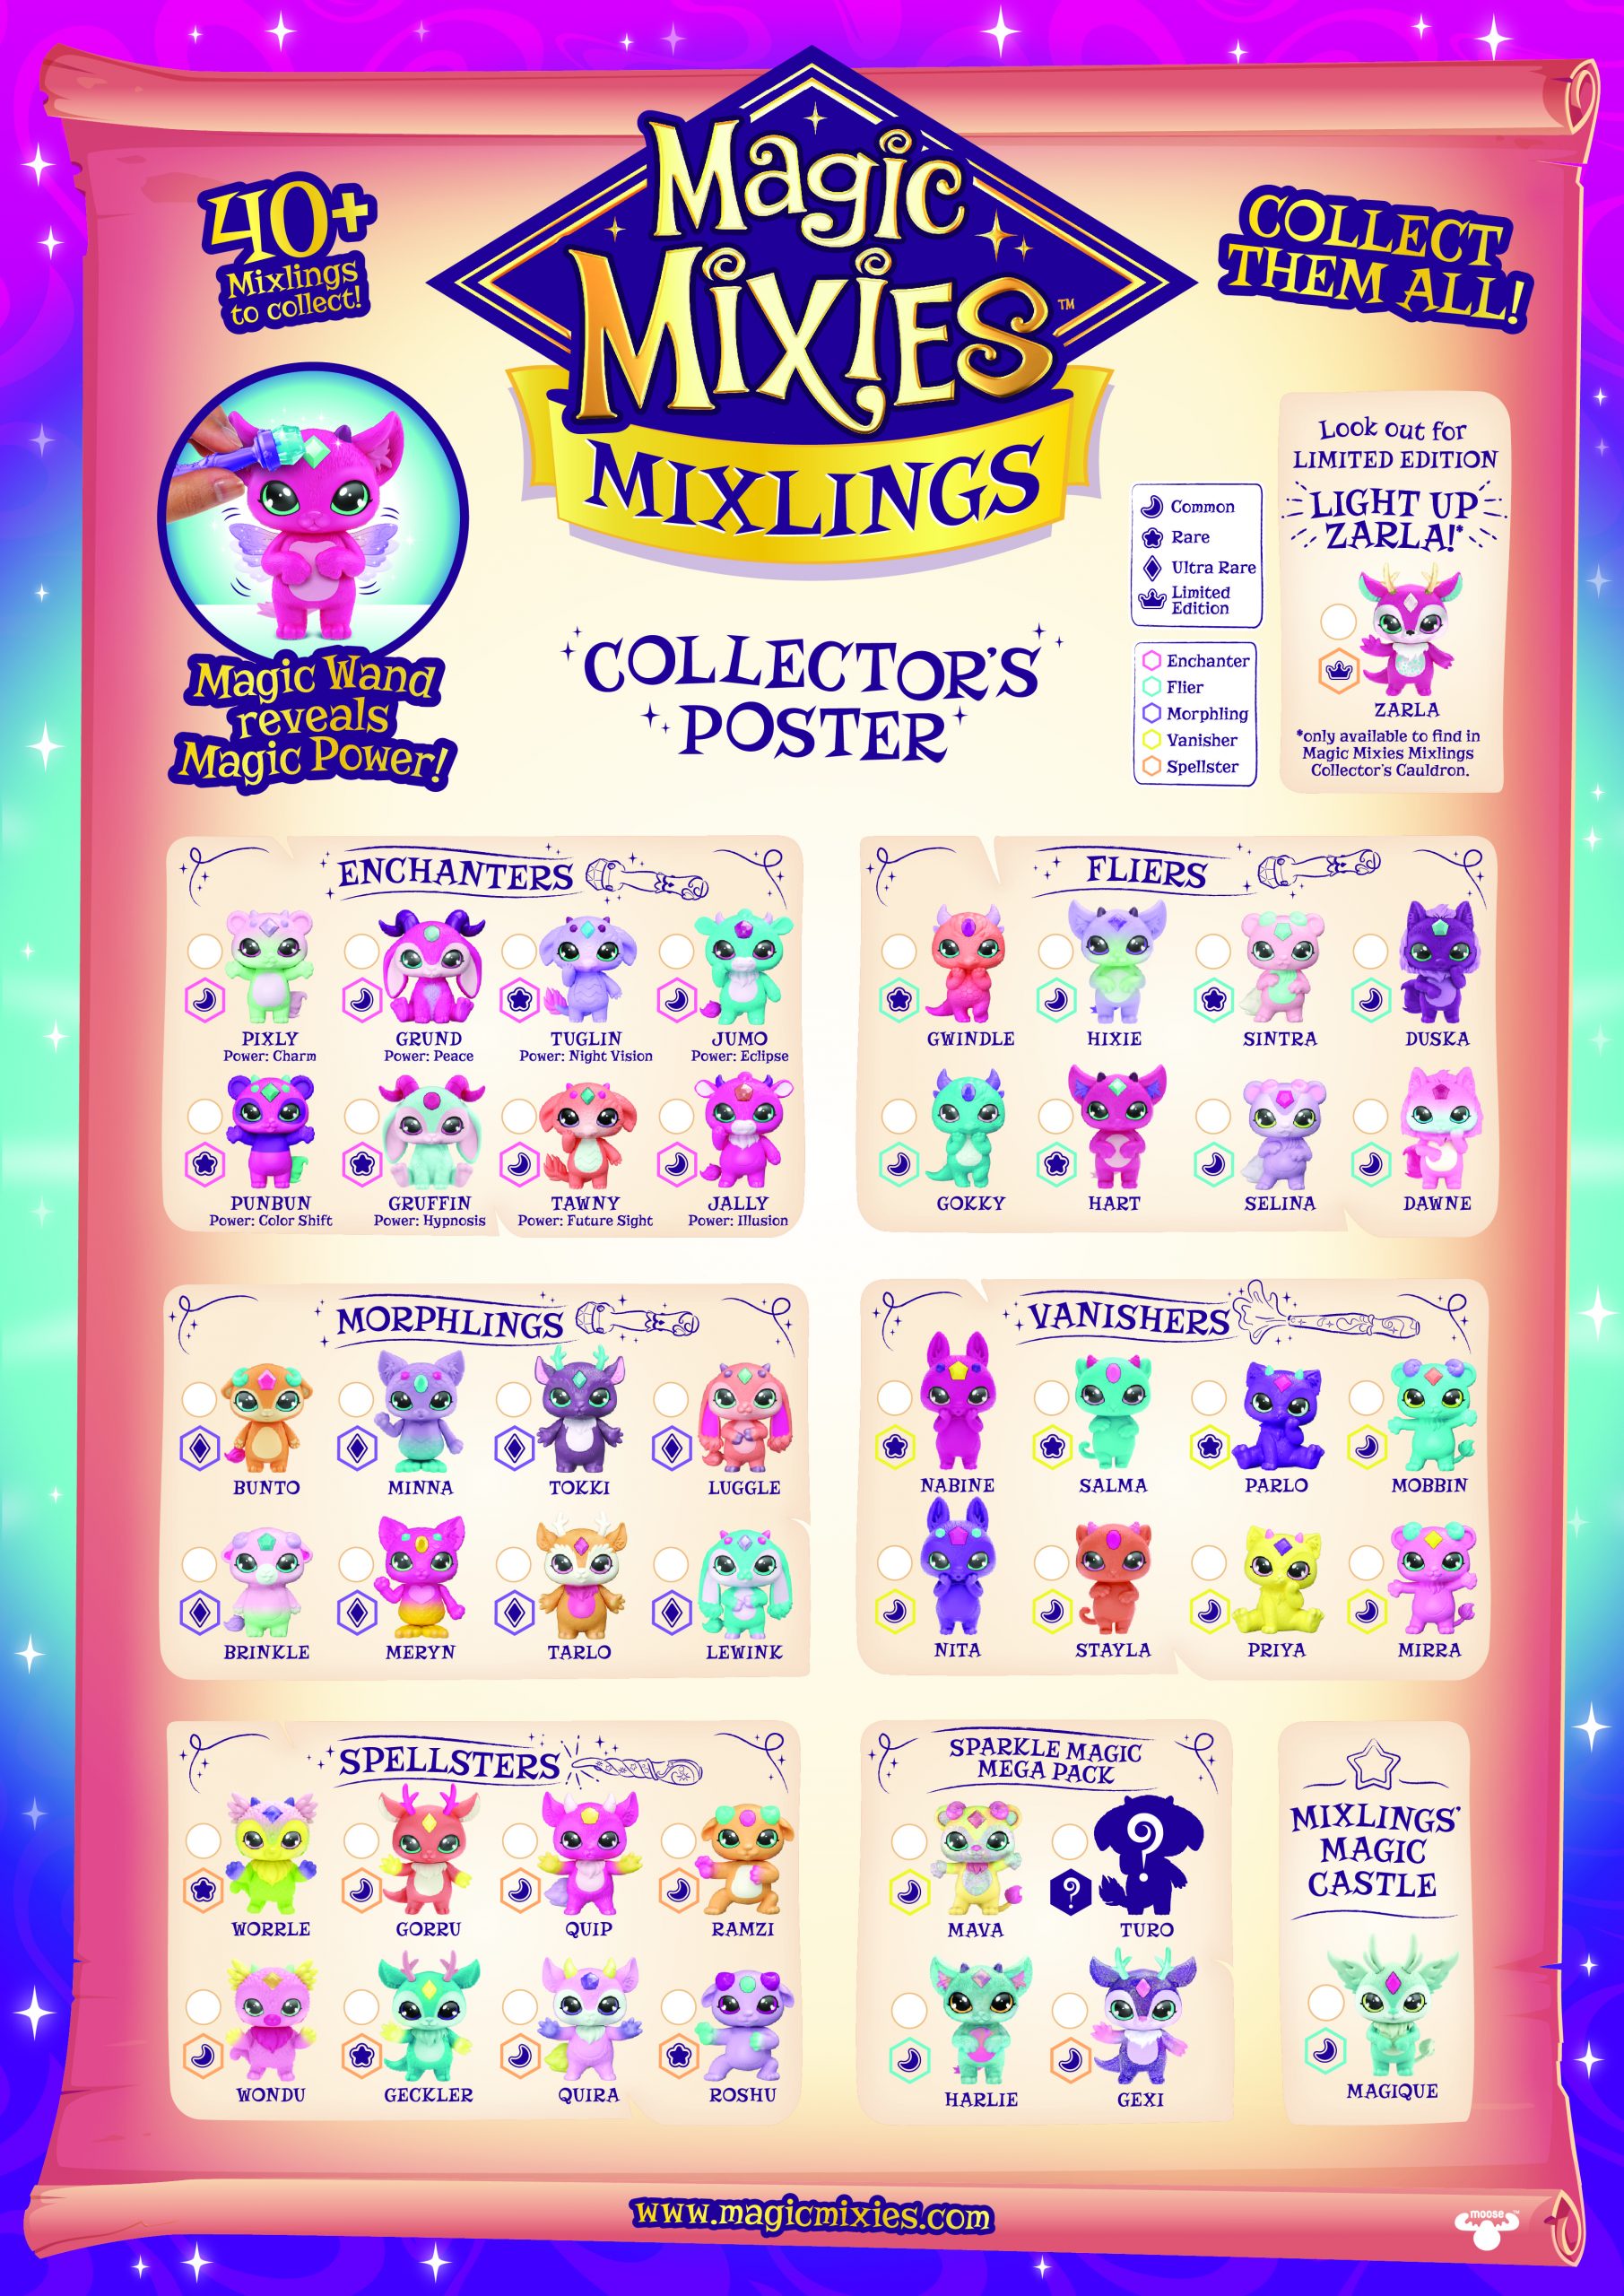 Где купить magic. Игровой набор Magic Mixies. Волшебный котел Magic Mixies. Magic Mixies игрушка. Magic Mixies Mixlings игрушка.